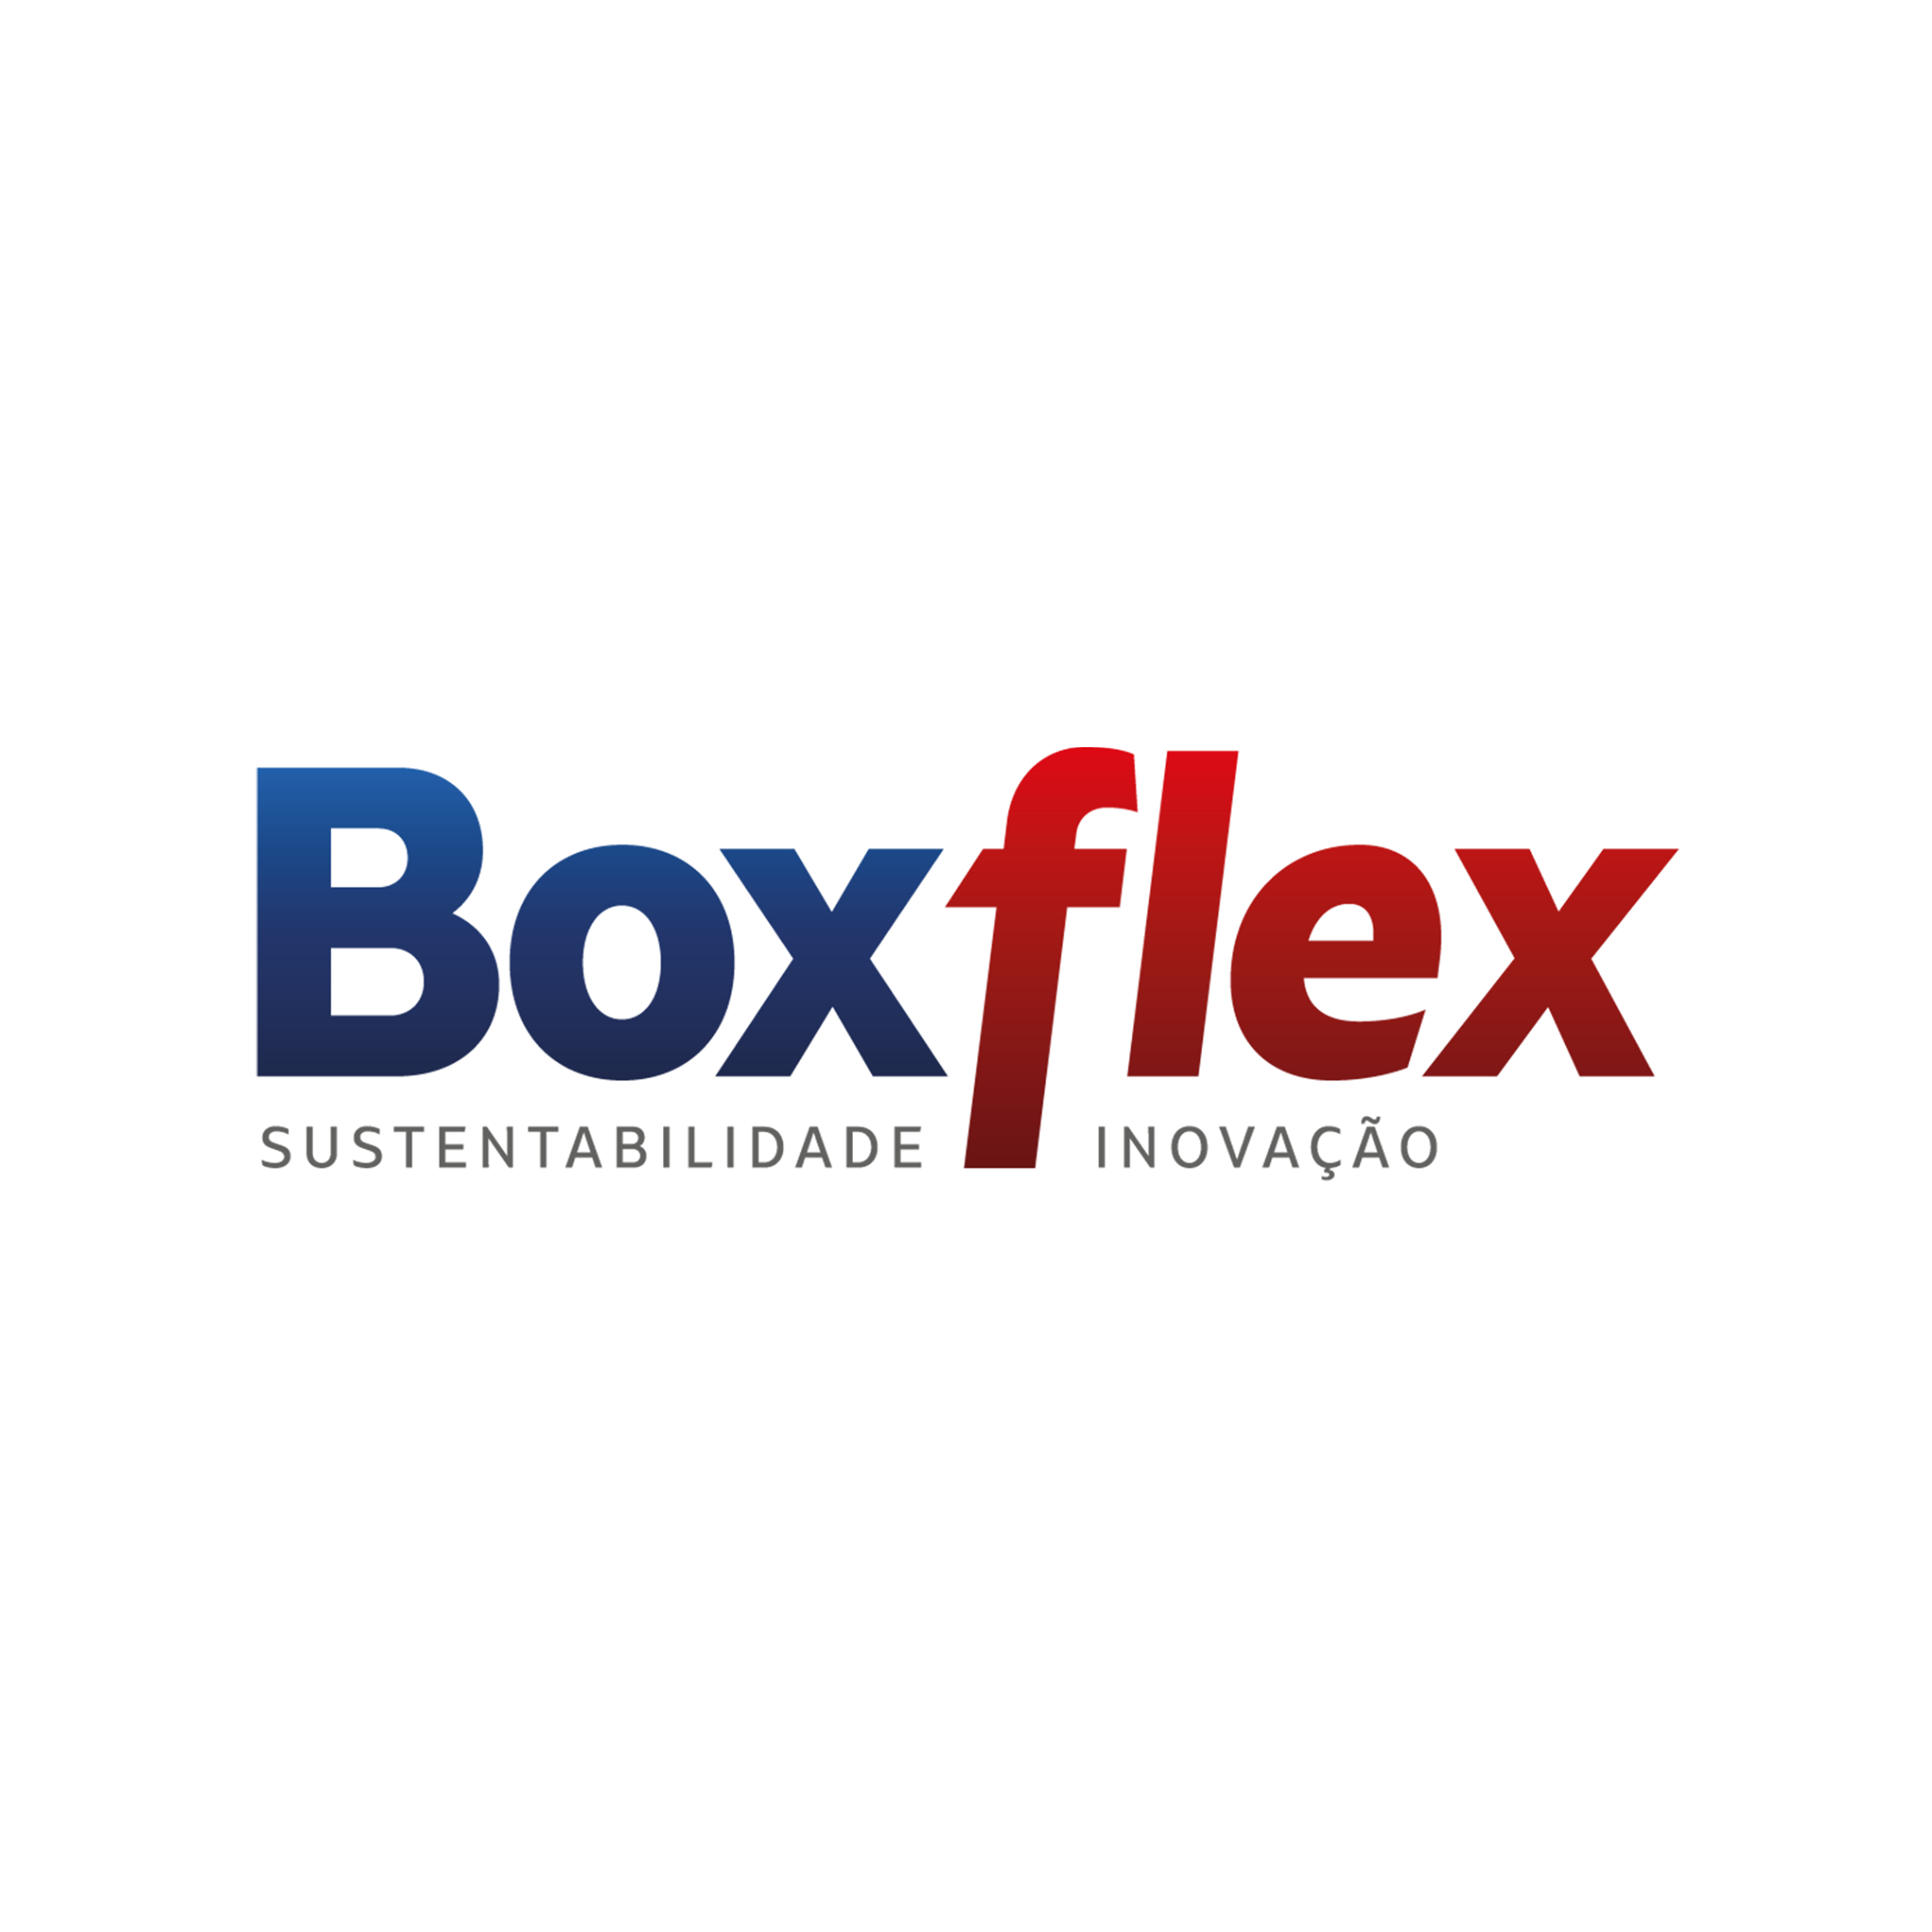 BOXFLEX